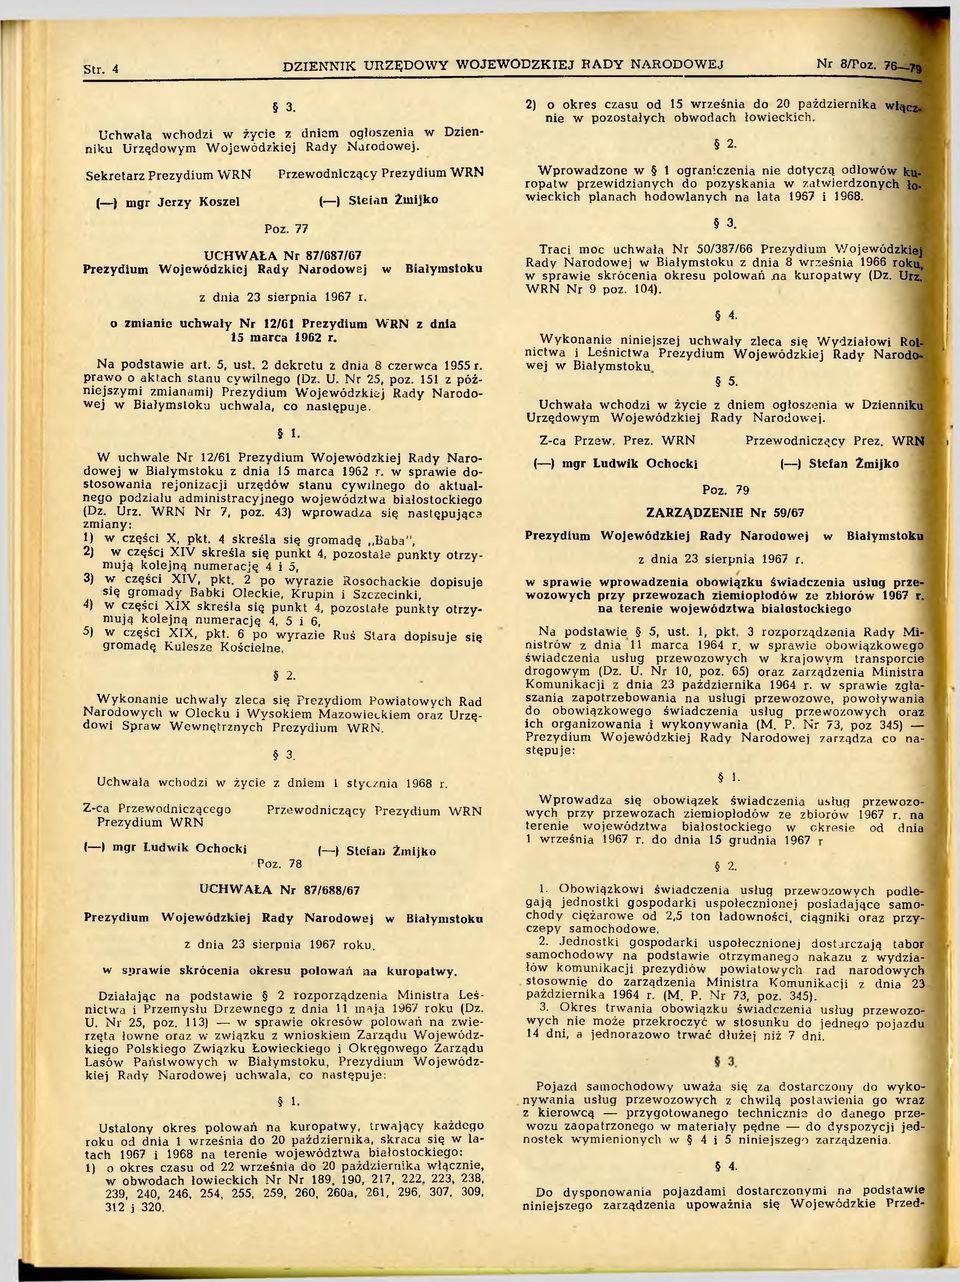 o zmianie uchwały Nr 12/61 Prezydium WRN z dnia 15 marca 1962 r. Na podstawie art. 5, ust. 2 dekretu z dnia 8 czerwca 1955 r. prawo o aktach stanu cywilnego (Dz. U. Nr 25, poz.